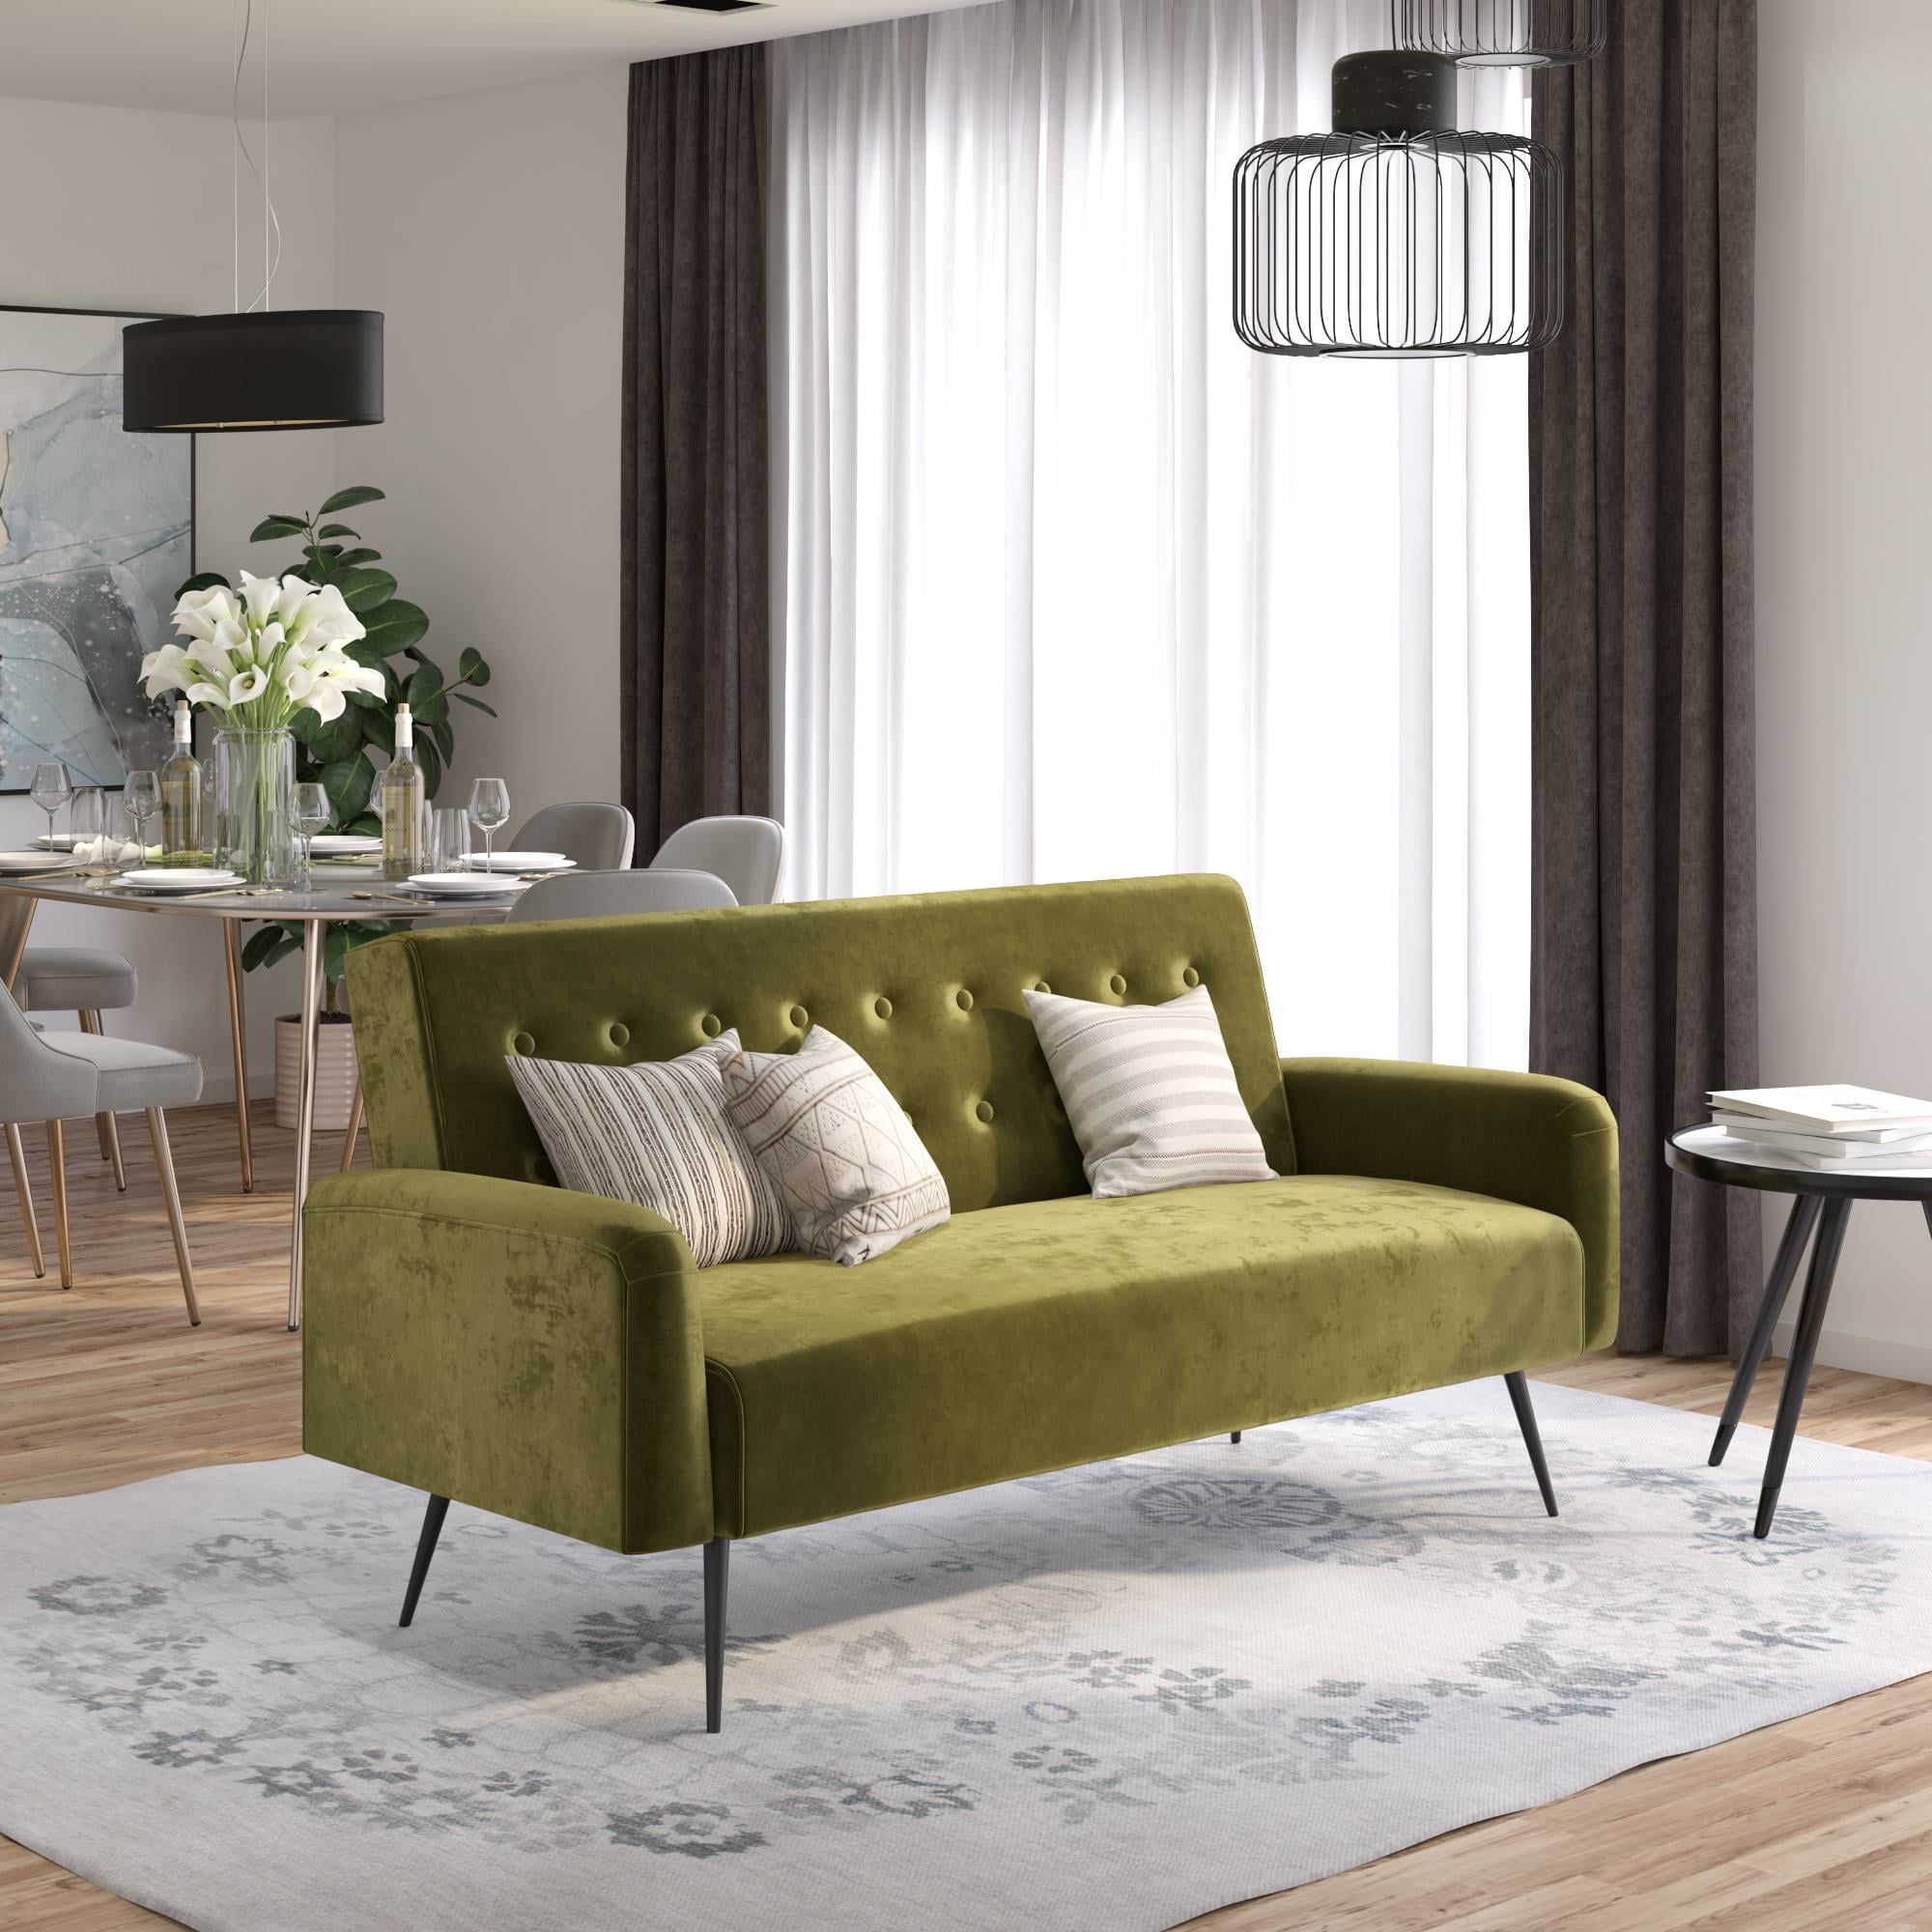 Buy Znovogratz Stevie Futon, Convertible Sofa Bed Couch, Green Throughout 66" Convertible Velvet Sofa Beds (View 15 of 15)